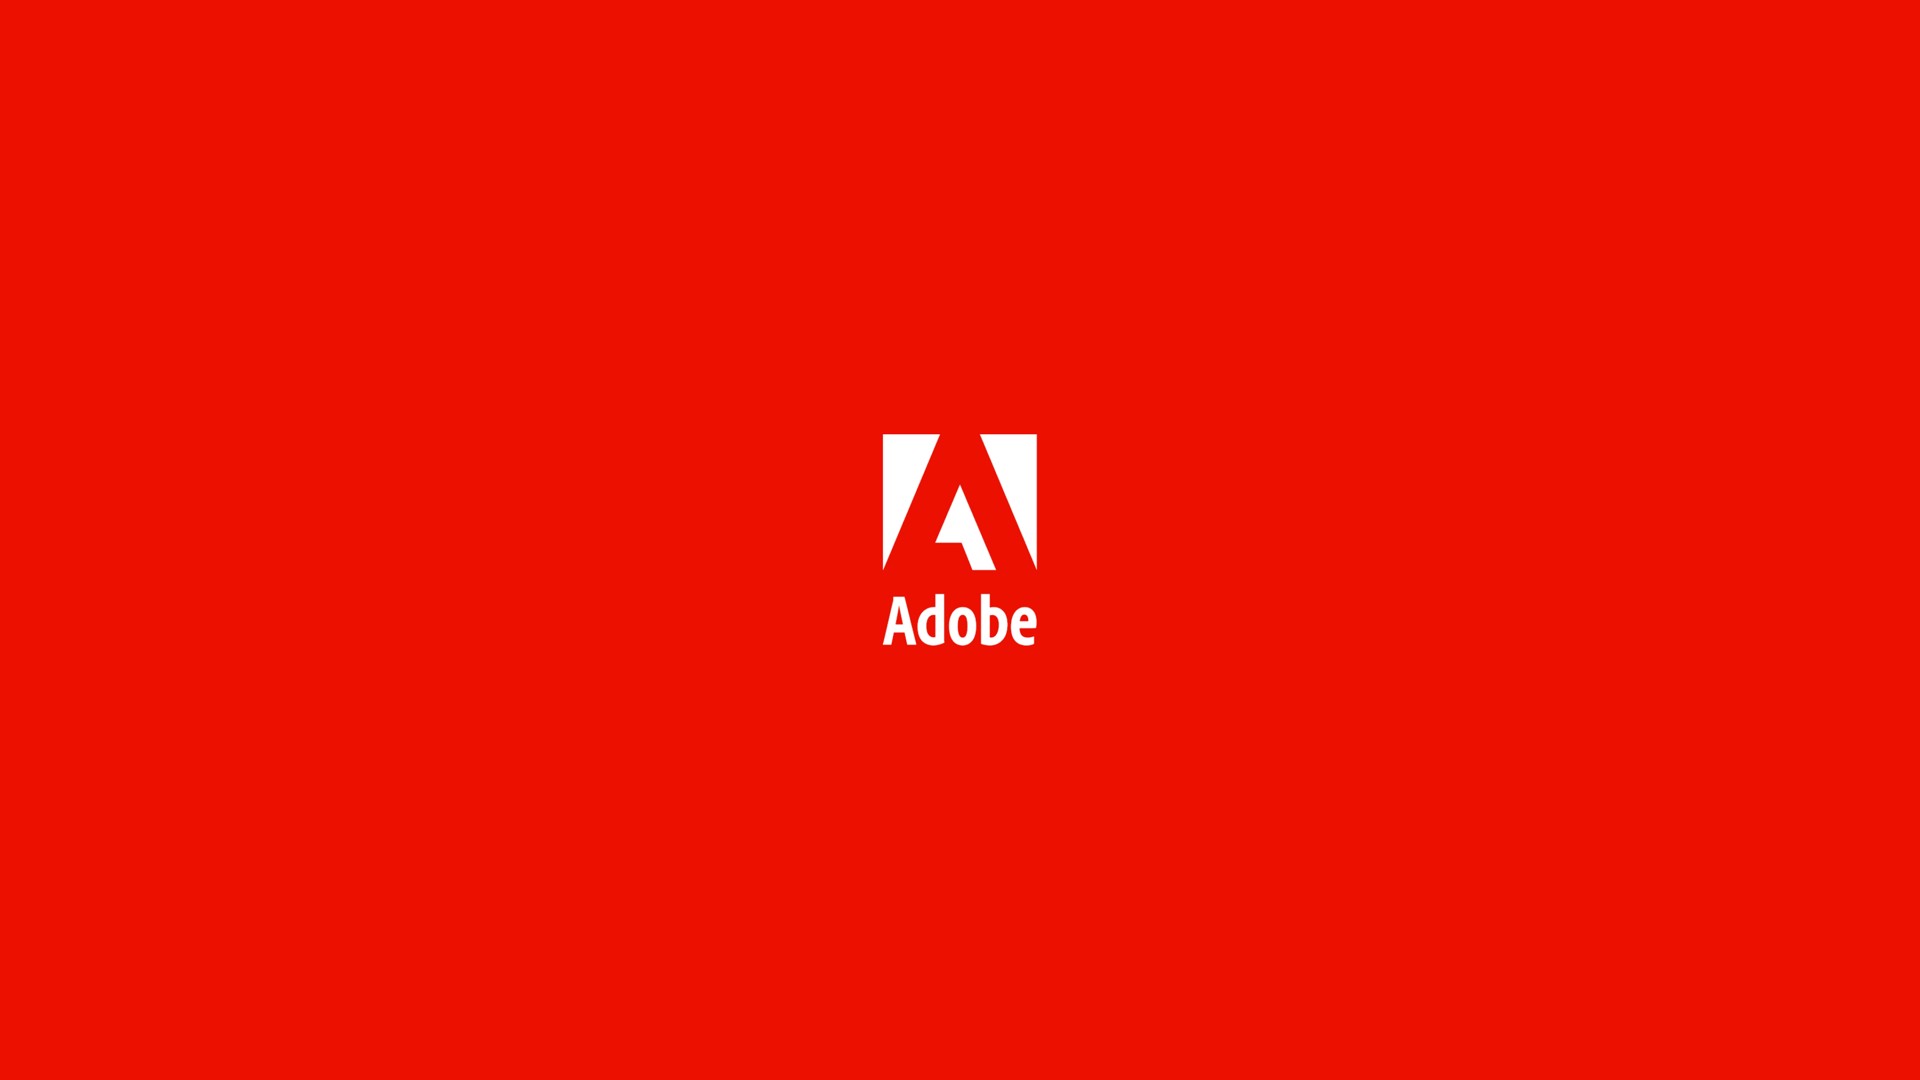 an adobe | Adobe